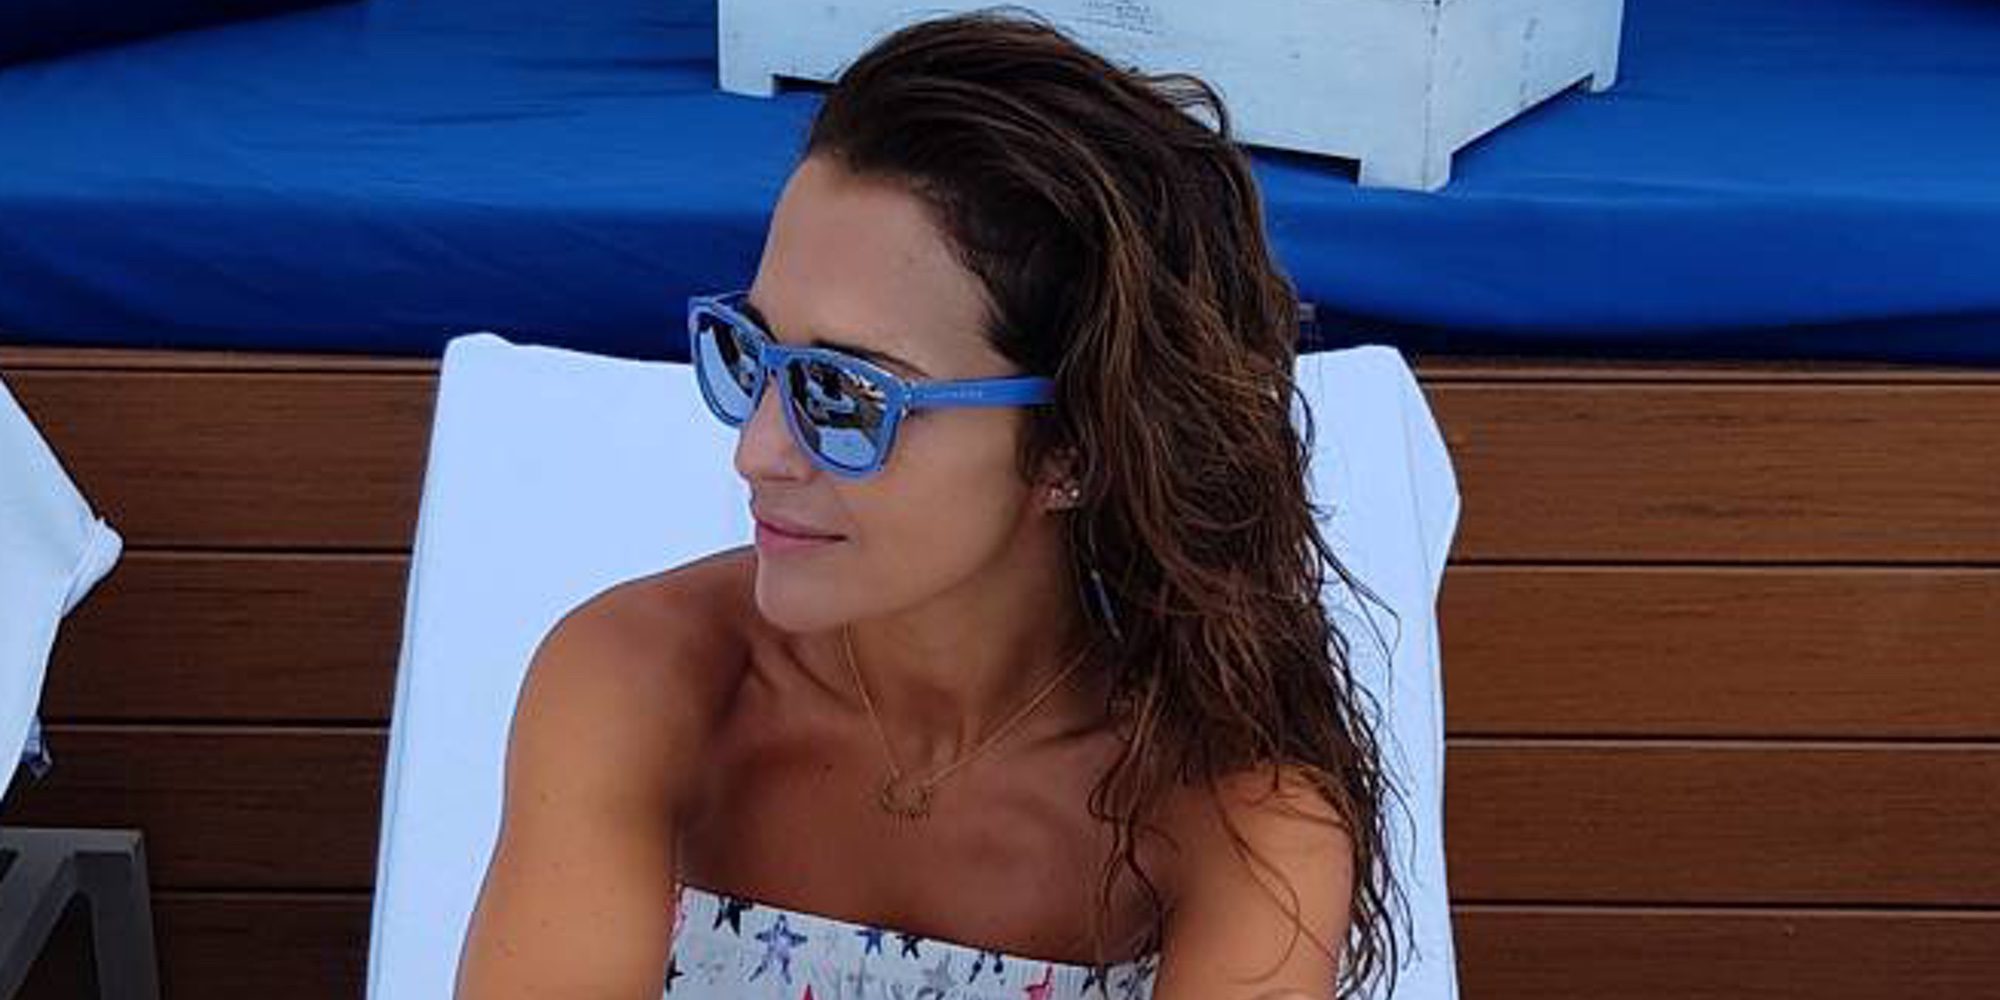 Paula Echevarría regresa de sus vacaciones 'solo para chicas' entre Marbella y Menorca